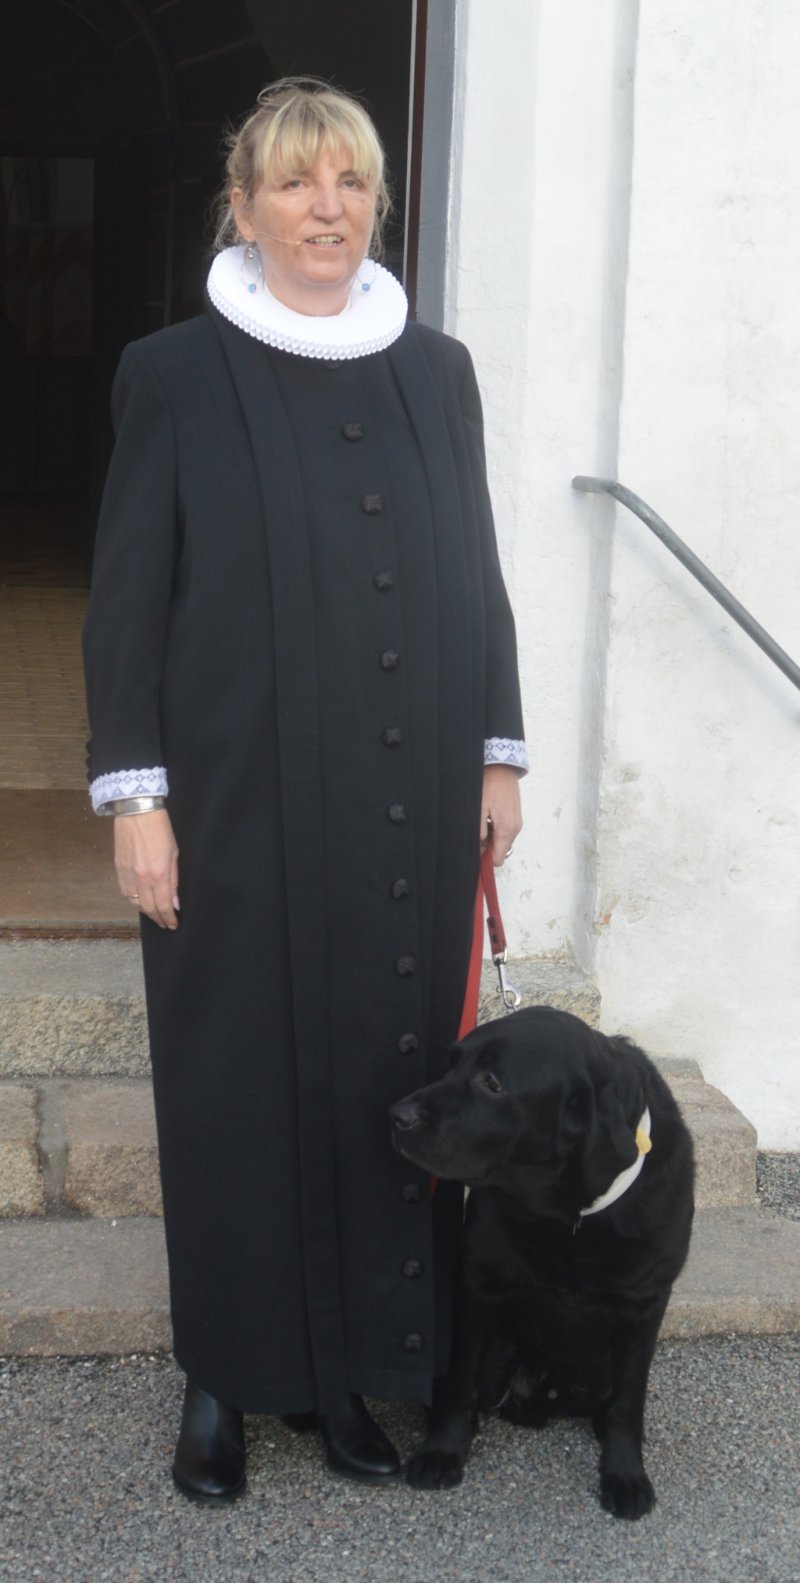 FOTO: Rita Skov Possienke ved præsteindsættelse i Tilst